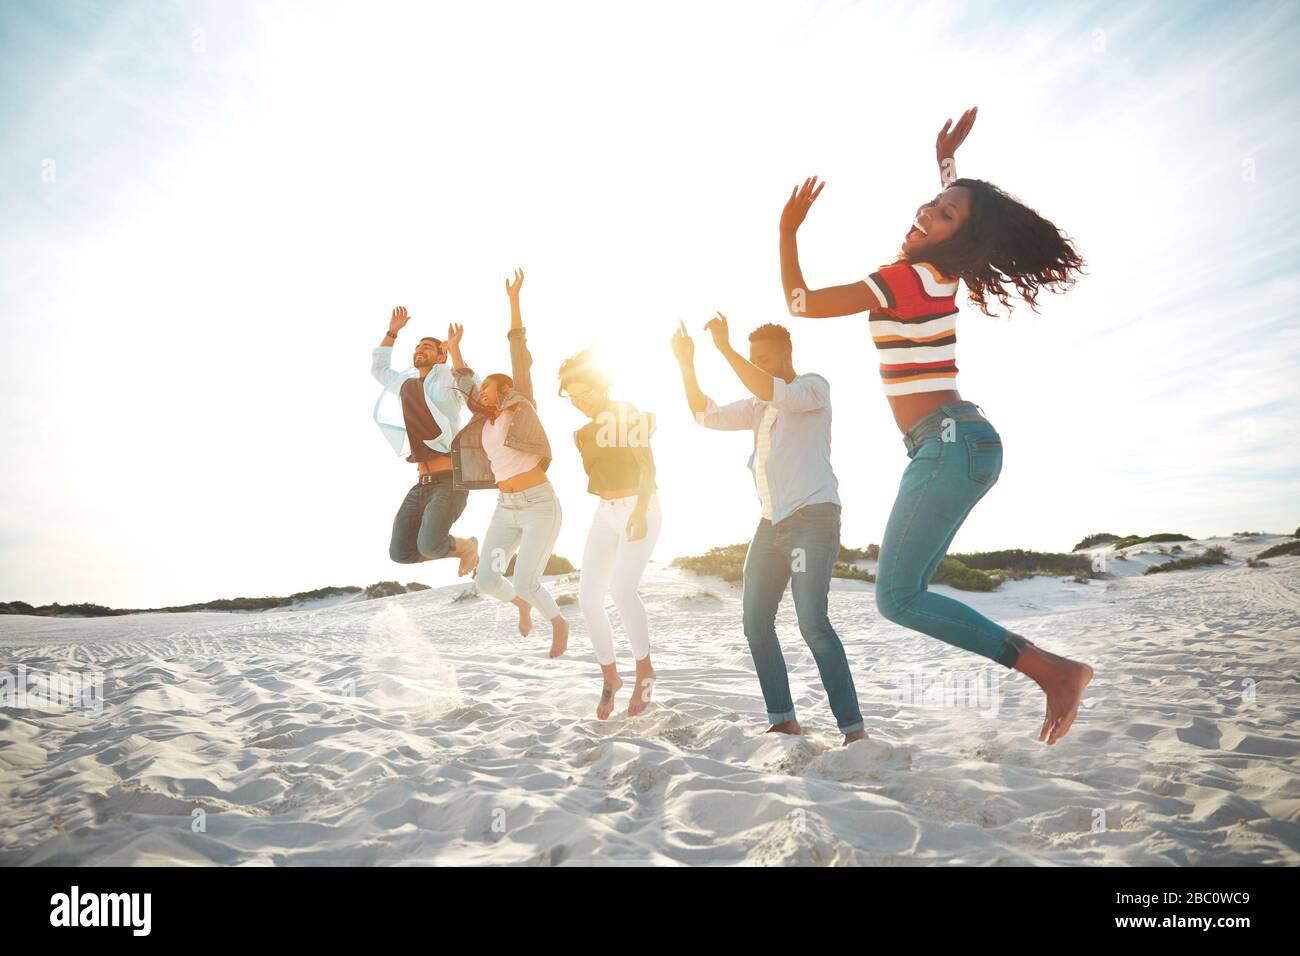 Ritratto giocoso, energico giovani amici che saltano per la gioia sulla spiaggia estiva soleggiata Foto Stock